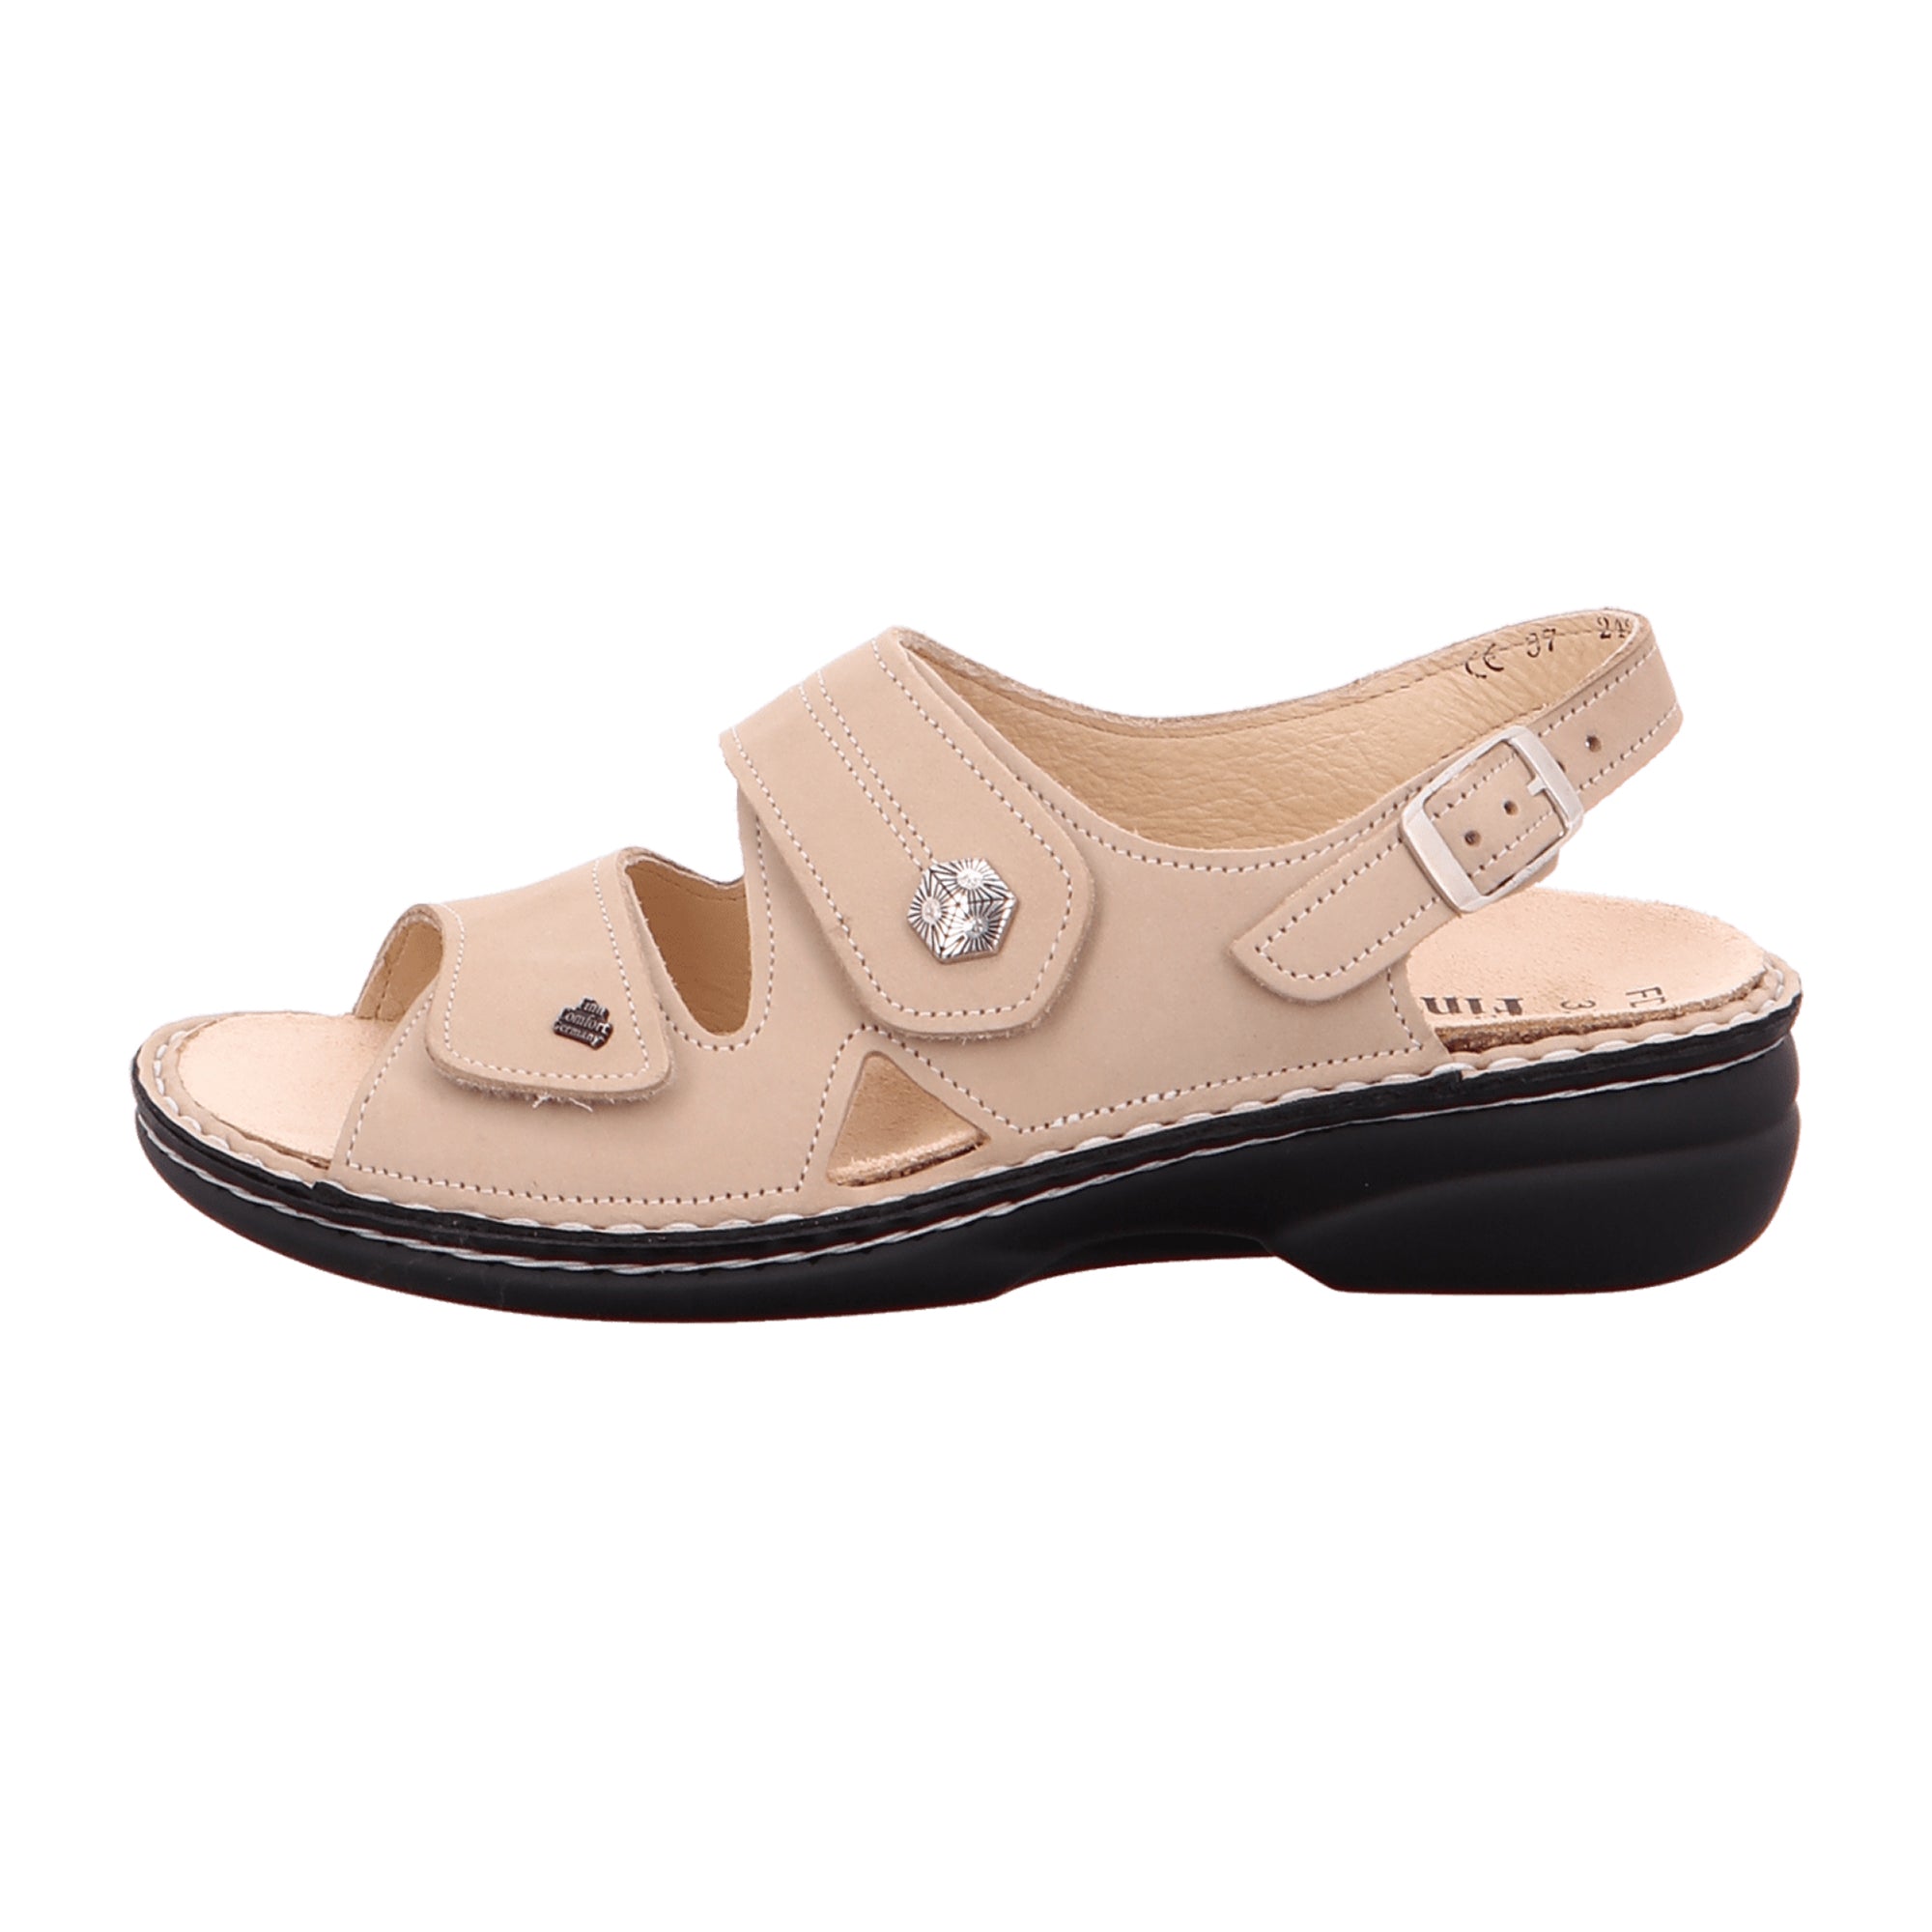 Finn Comfort Milos Women's Comfort Sandals - Beige